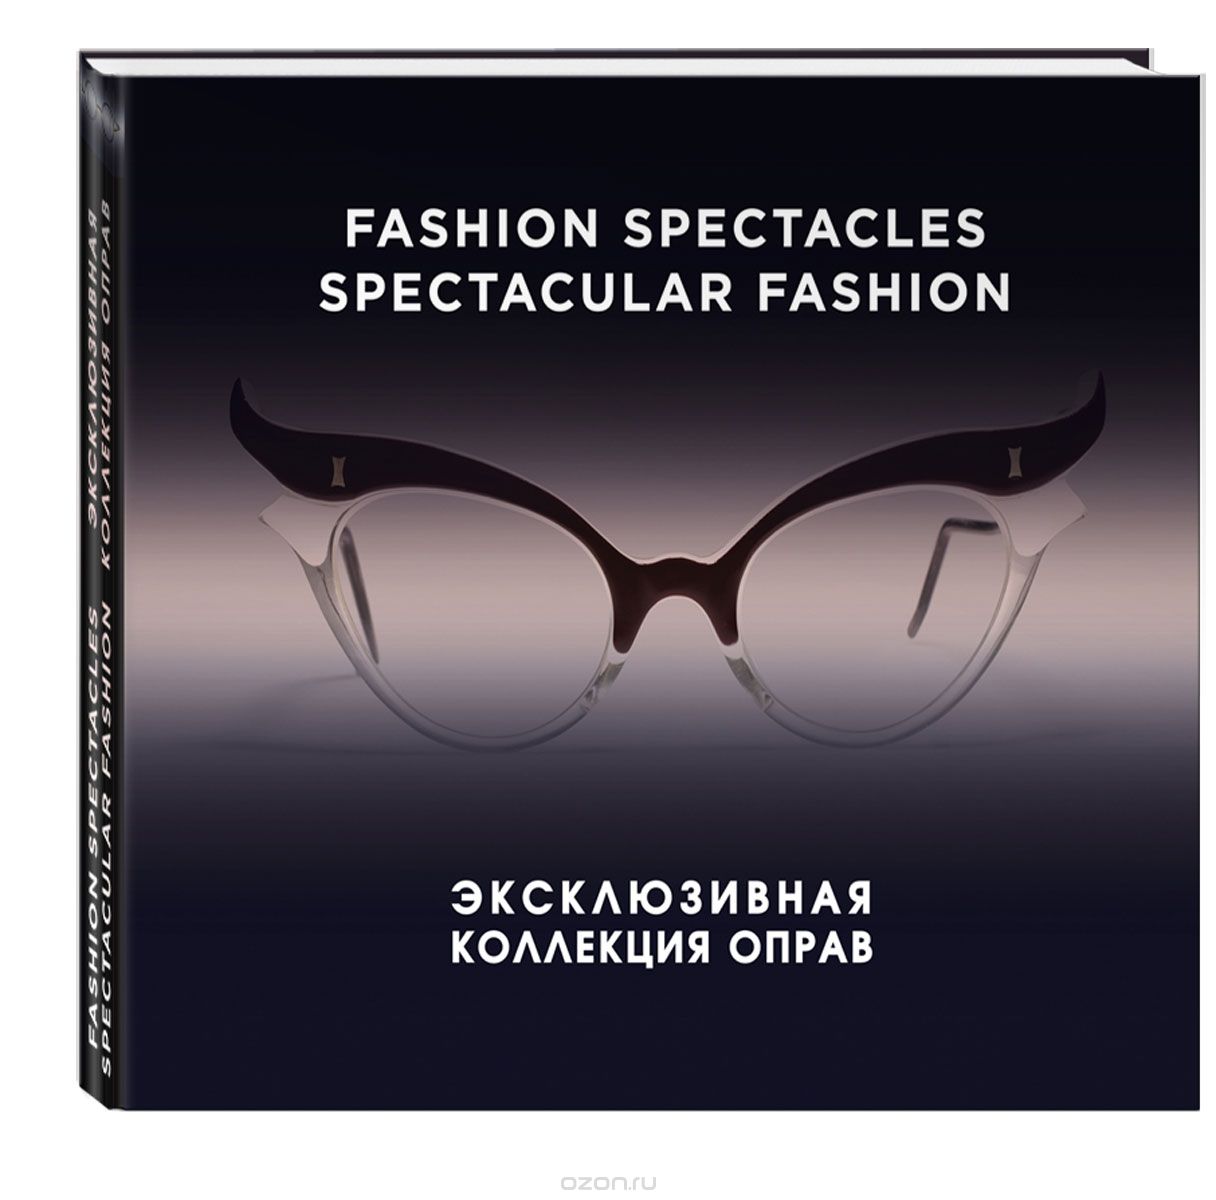 Скачать книгу "Fashion Spectacles, Spectacular Fashion. Эксклюзивная коллекция оправ, Саймон Мюррэй, Никки Албретчсен"